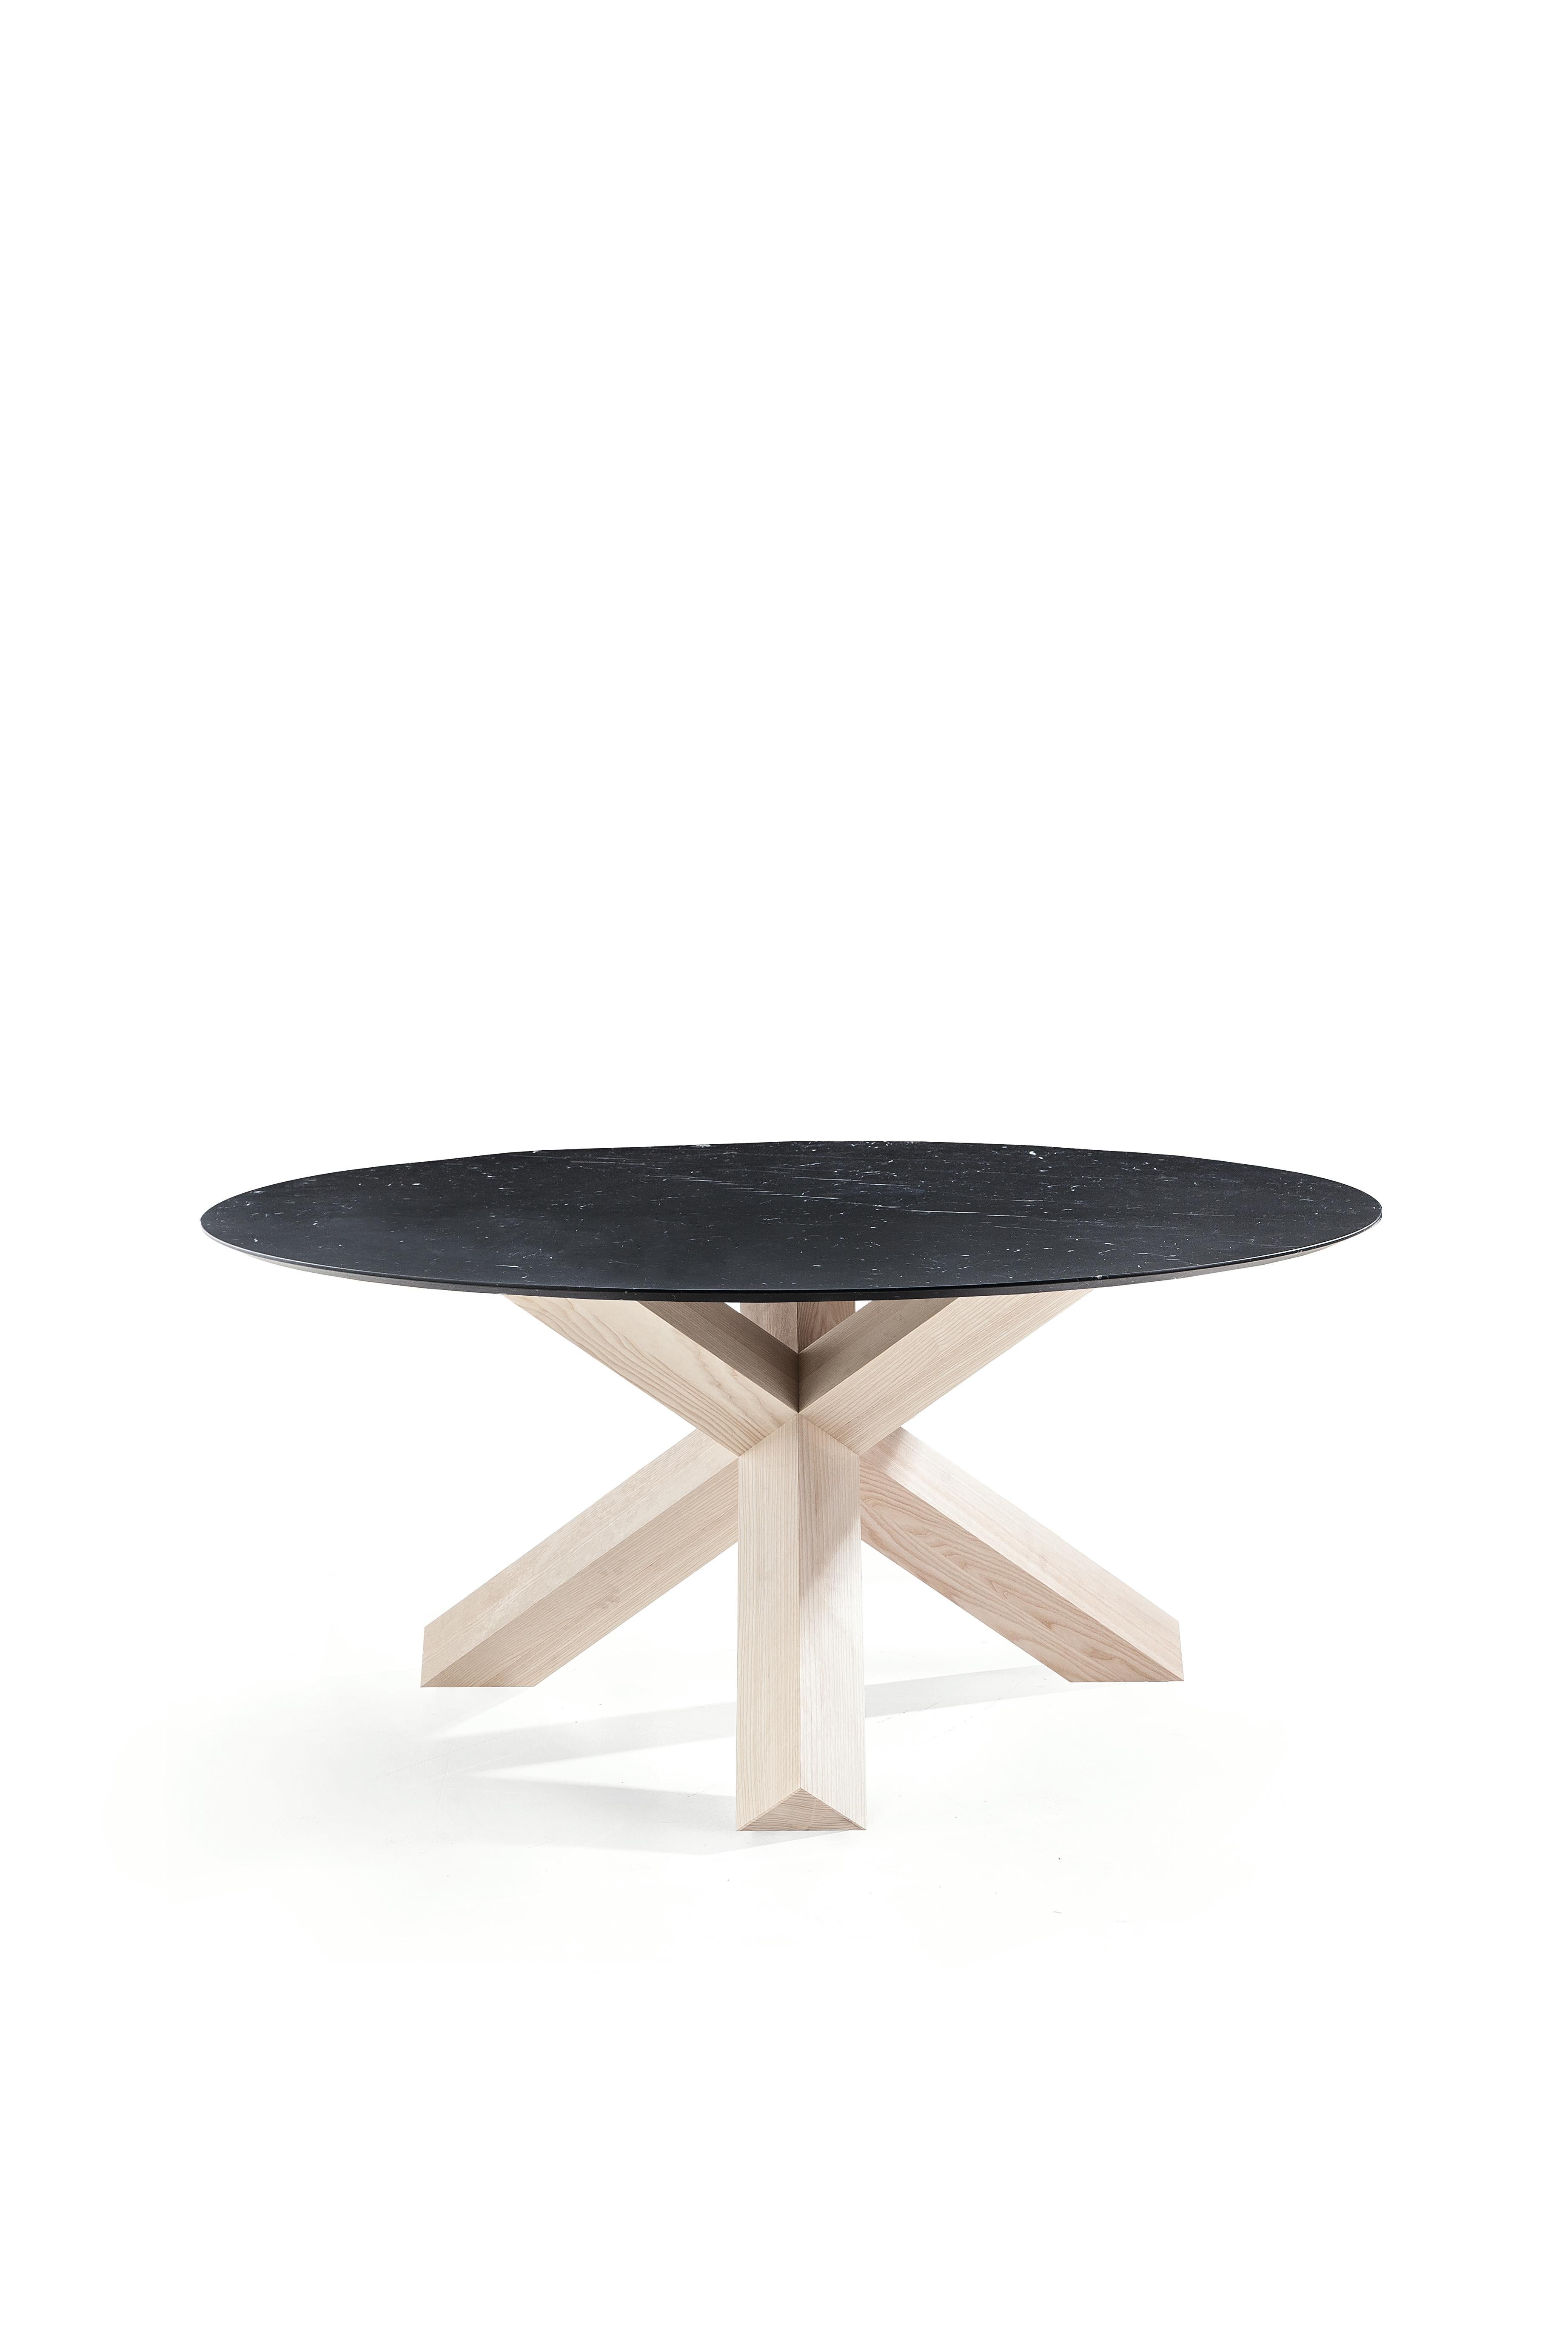 Mario Bellini La Rotonda Table by Cassina In New Condition For Sale In Barcelona, Barcelona